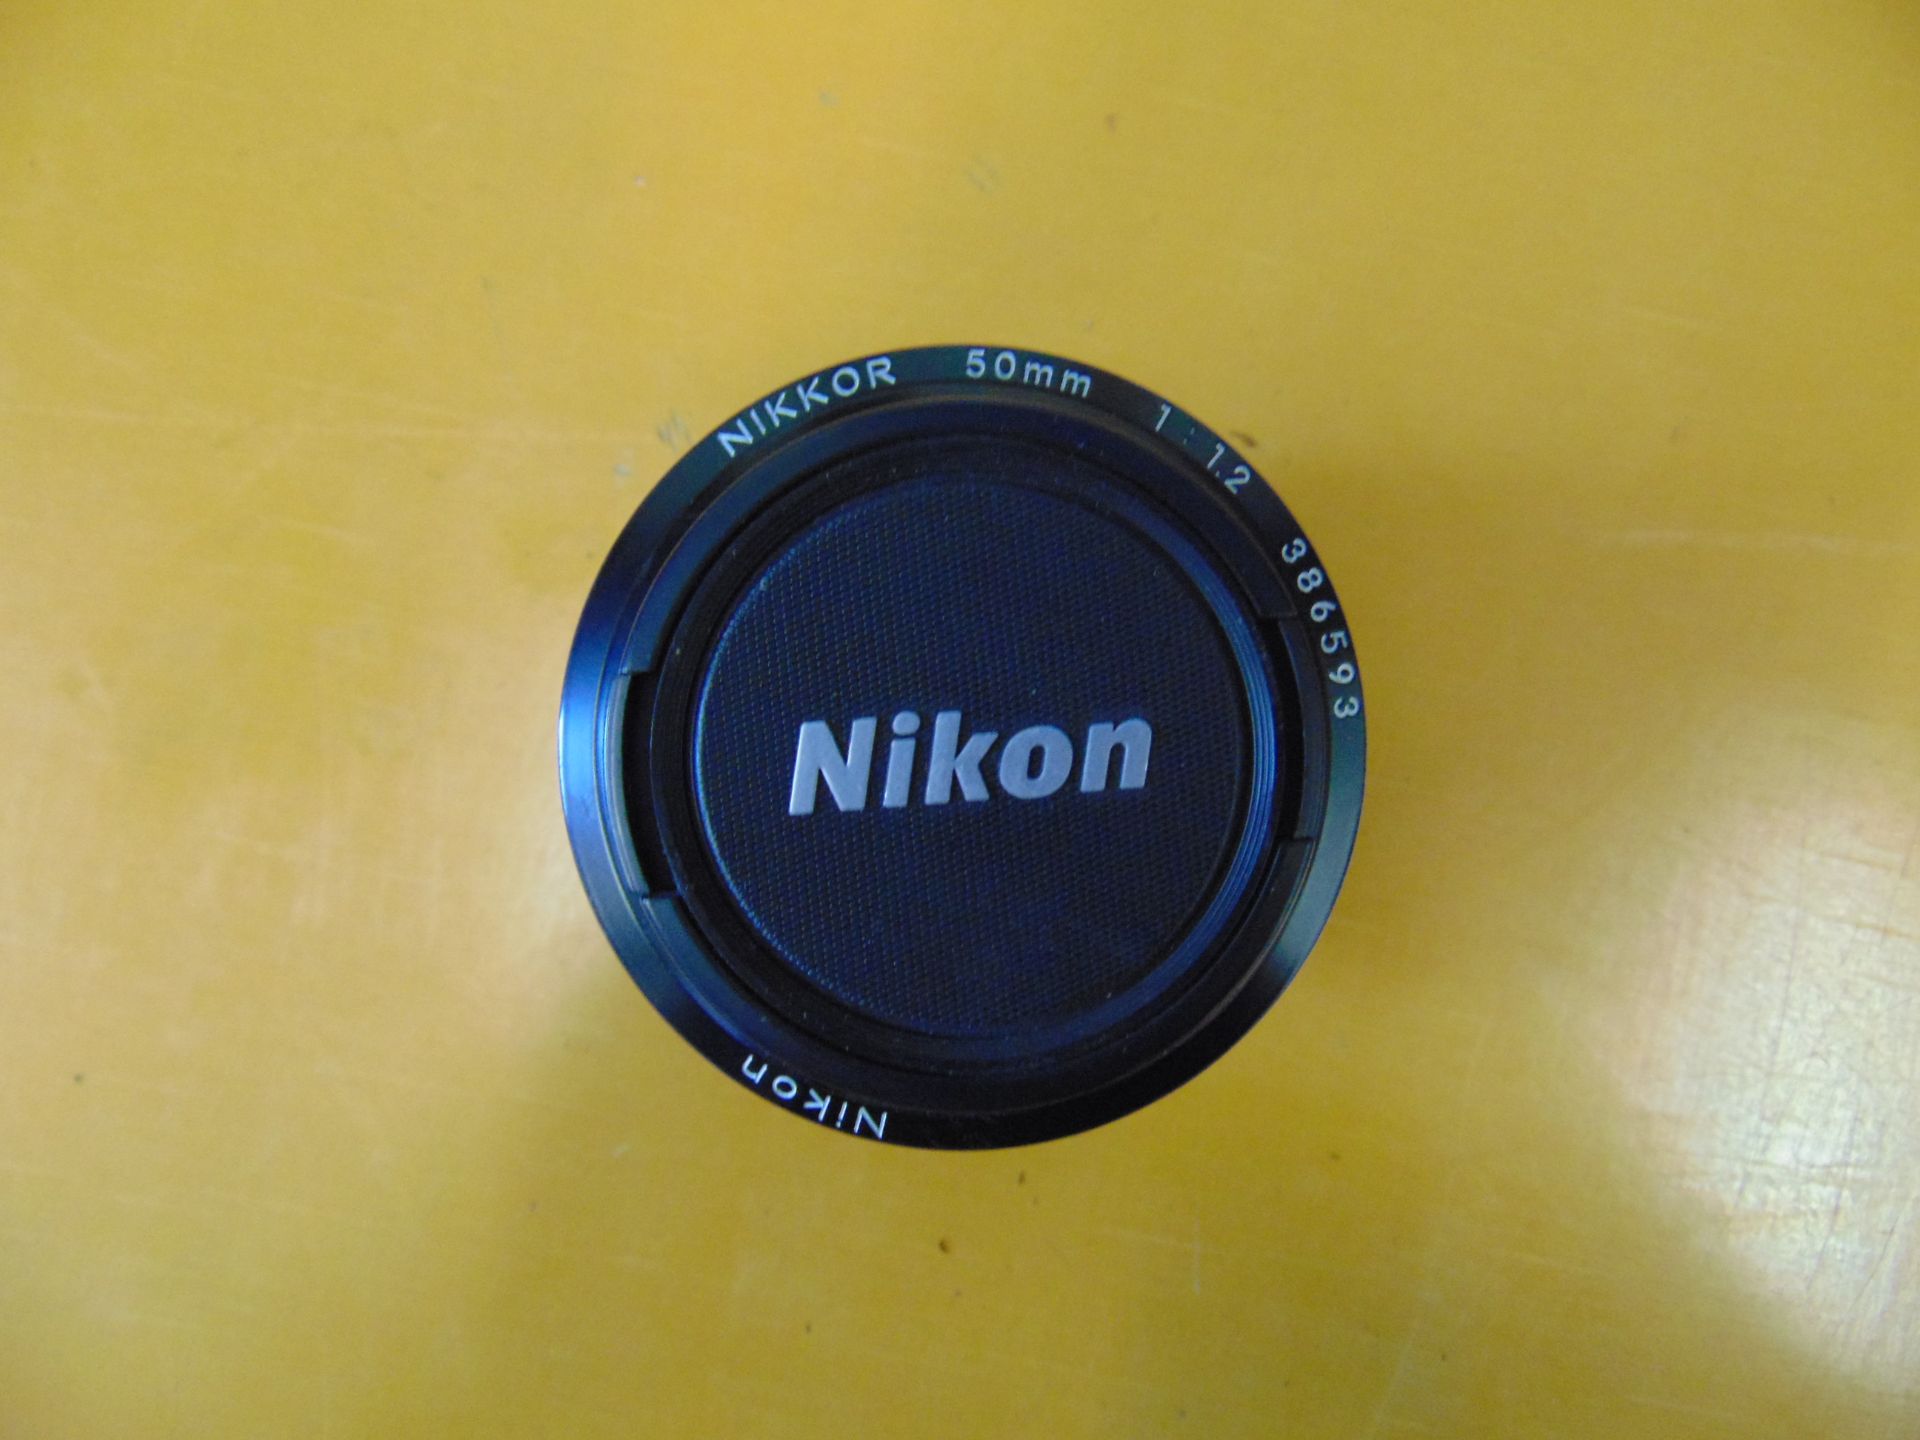 Nikon 50mm F1.2D AIS Nikkor Lens - Image 5 of 6